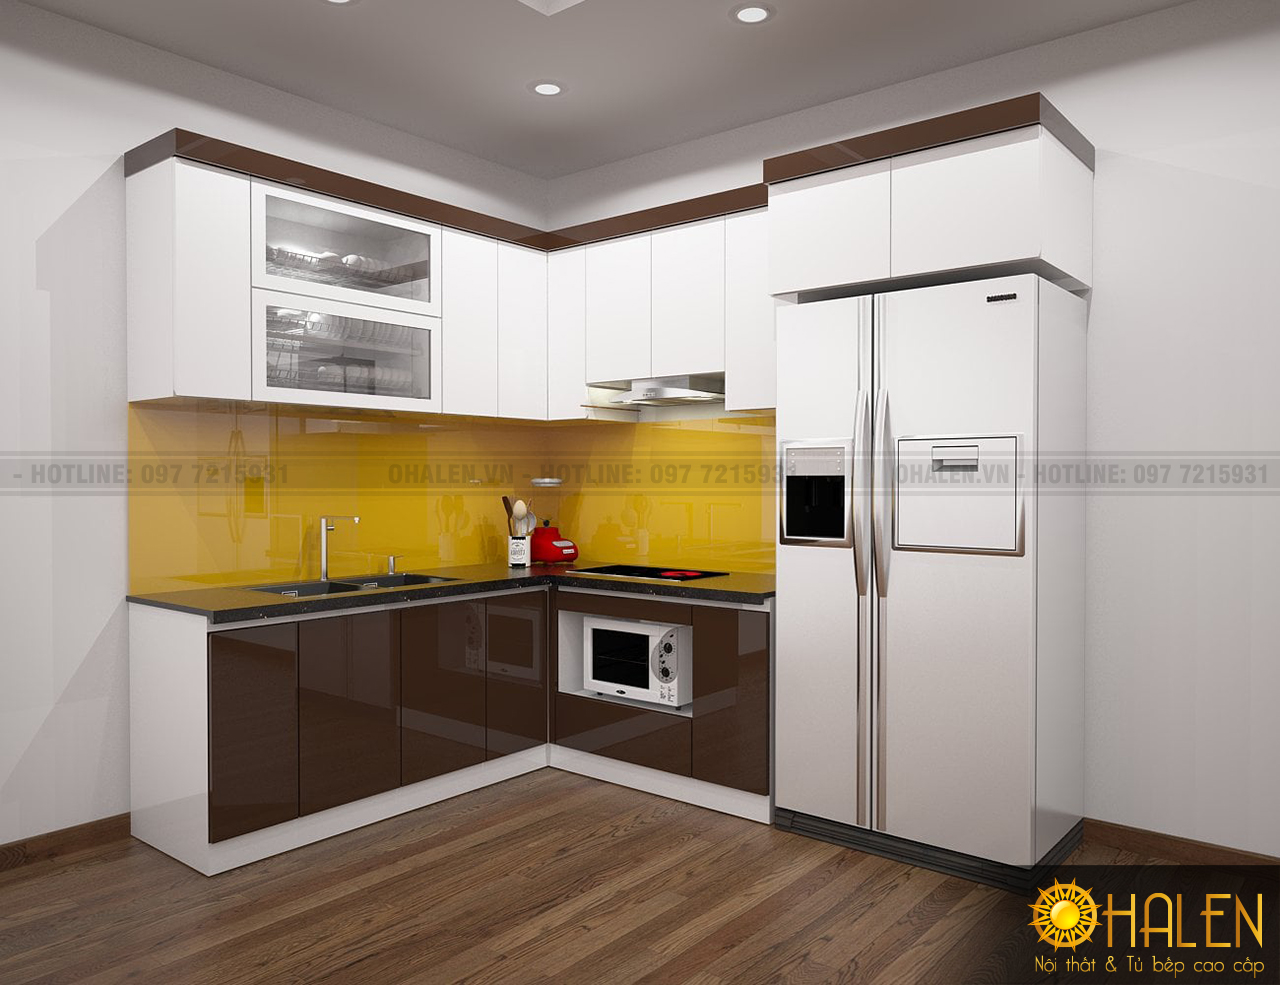 Kính ốp bếp màu vàng kết với tủ bếp Acrylic bóng gương dễ dàng vệ sinh lau chùi